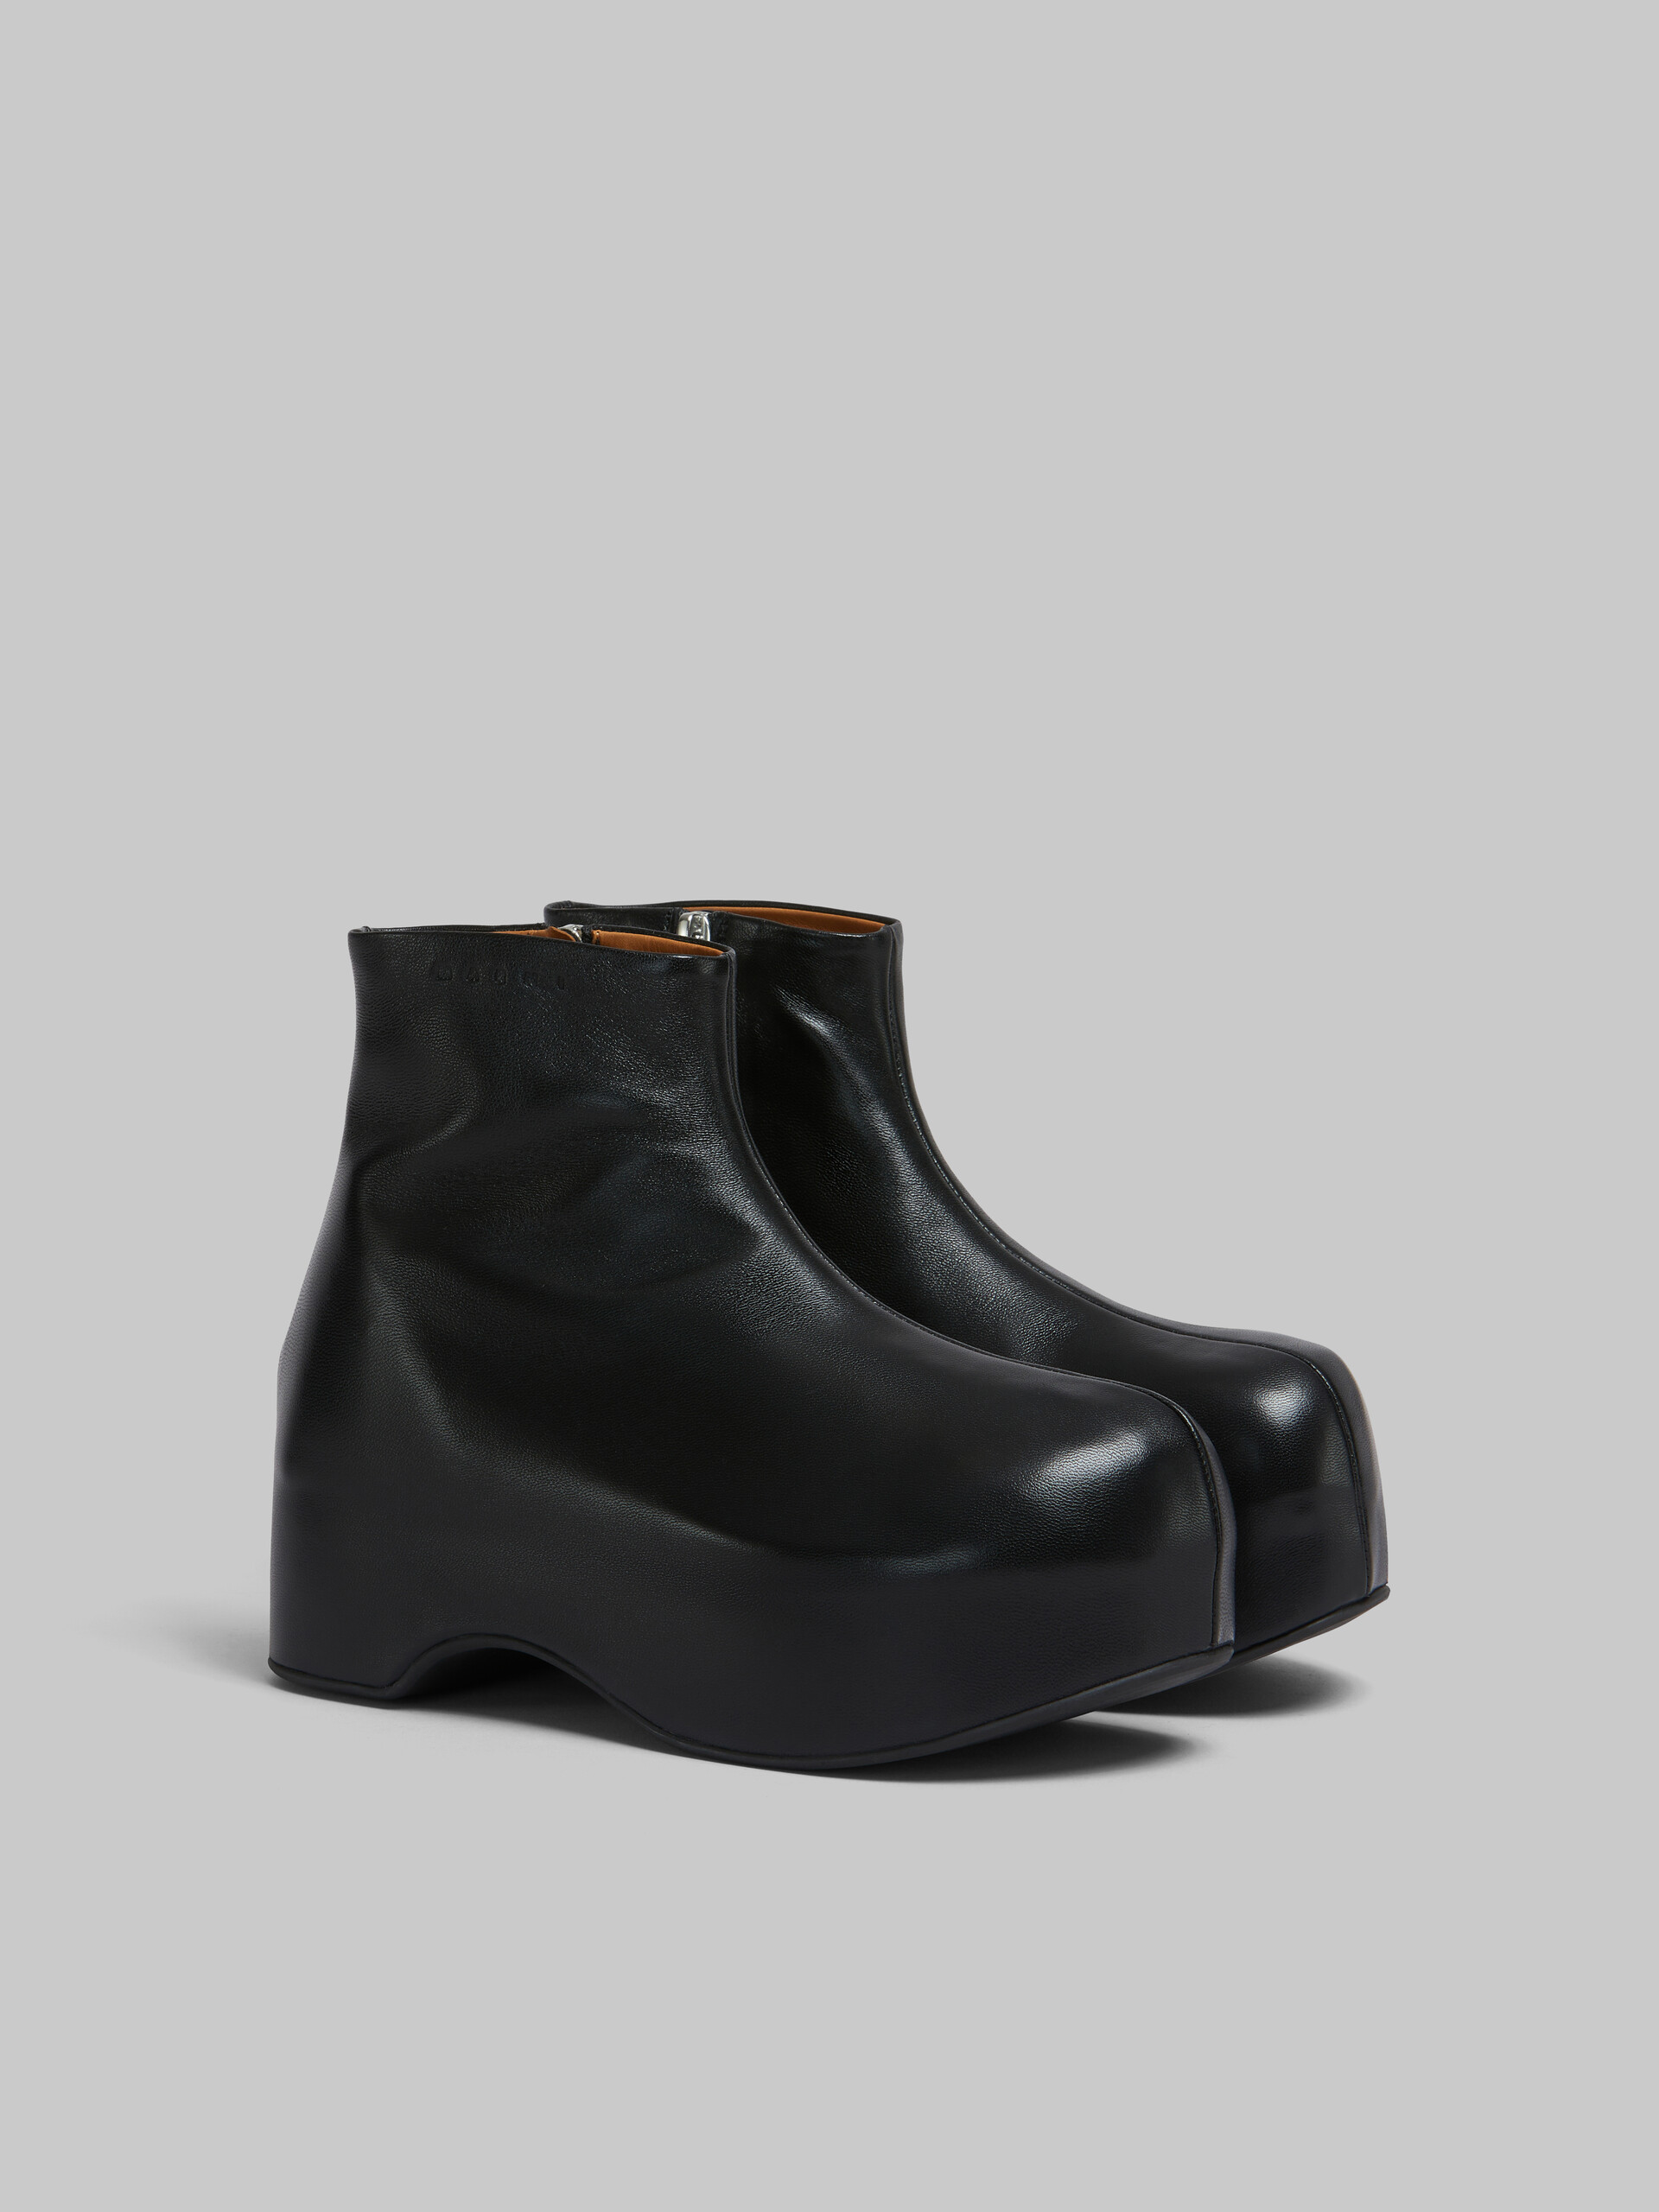 블랙 가죽 청키 클로그 부츠 - Boots - Image 2